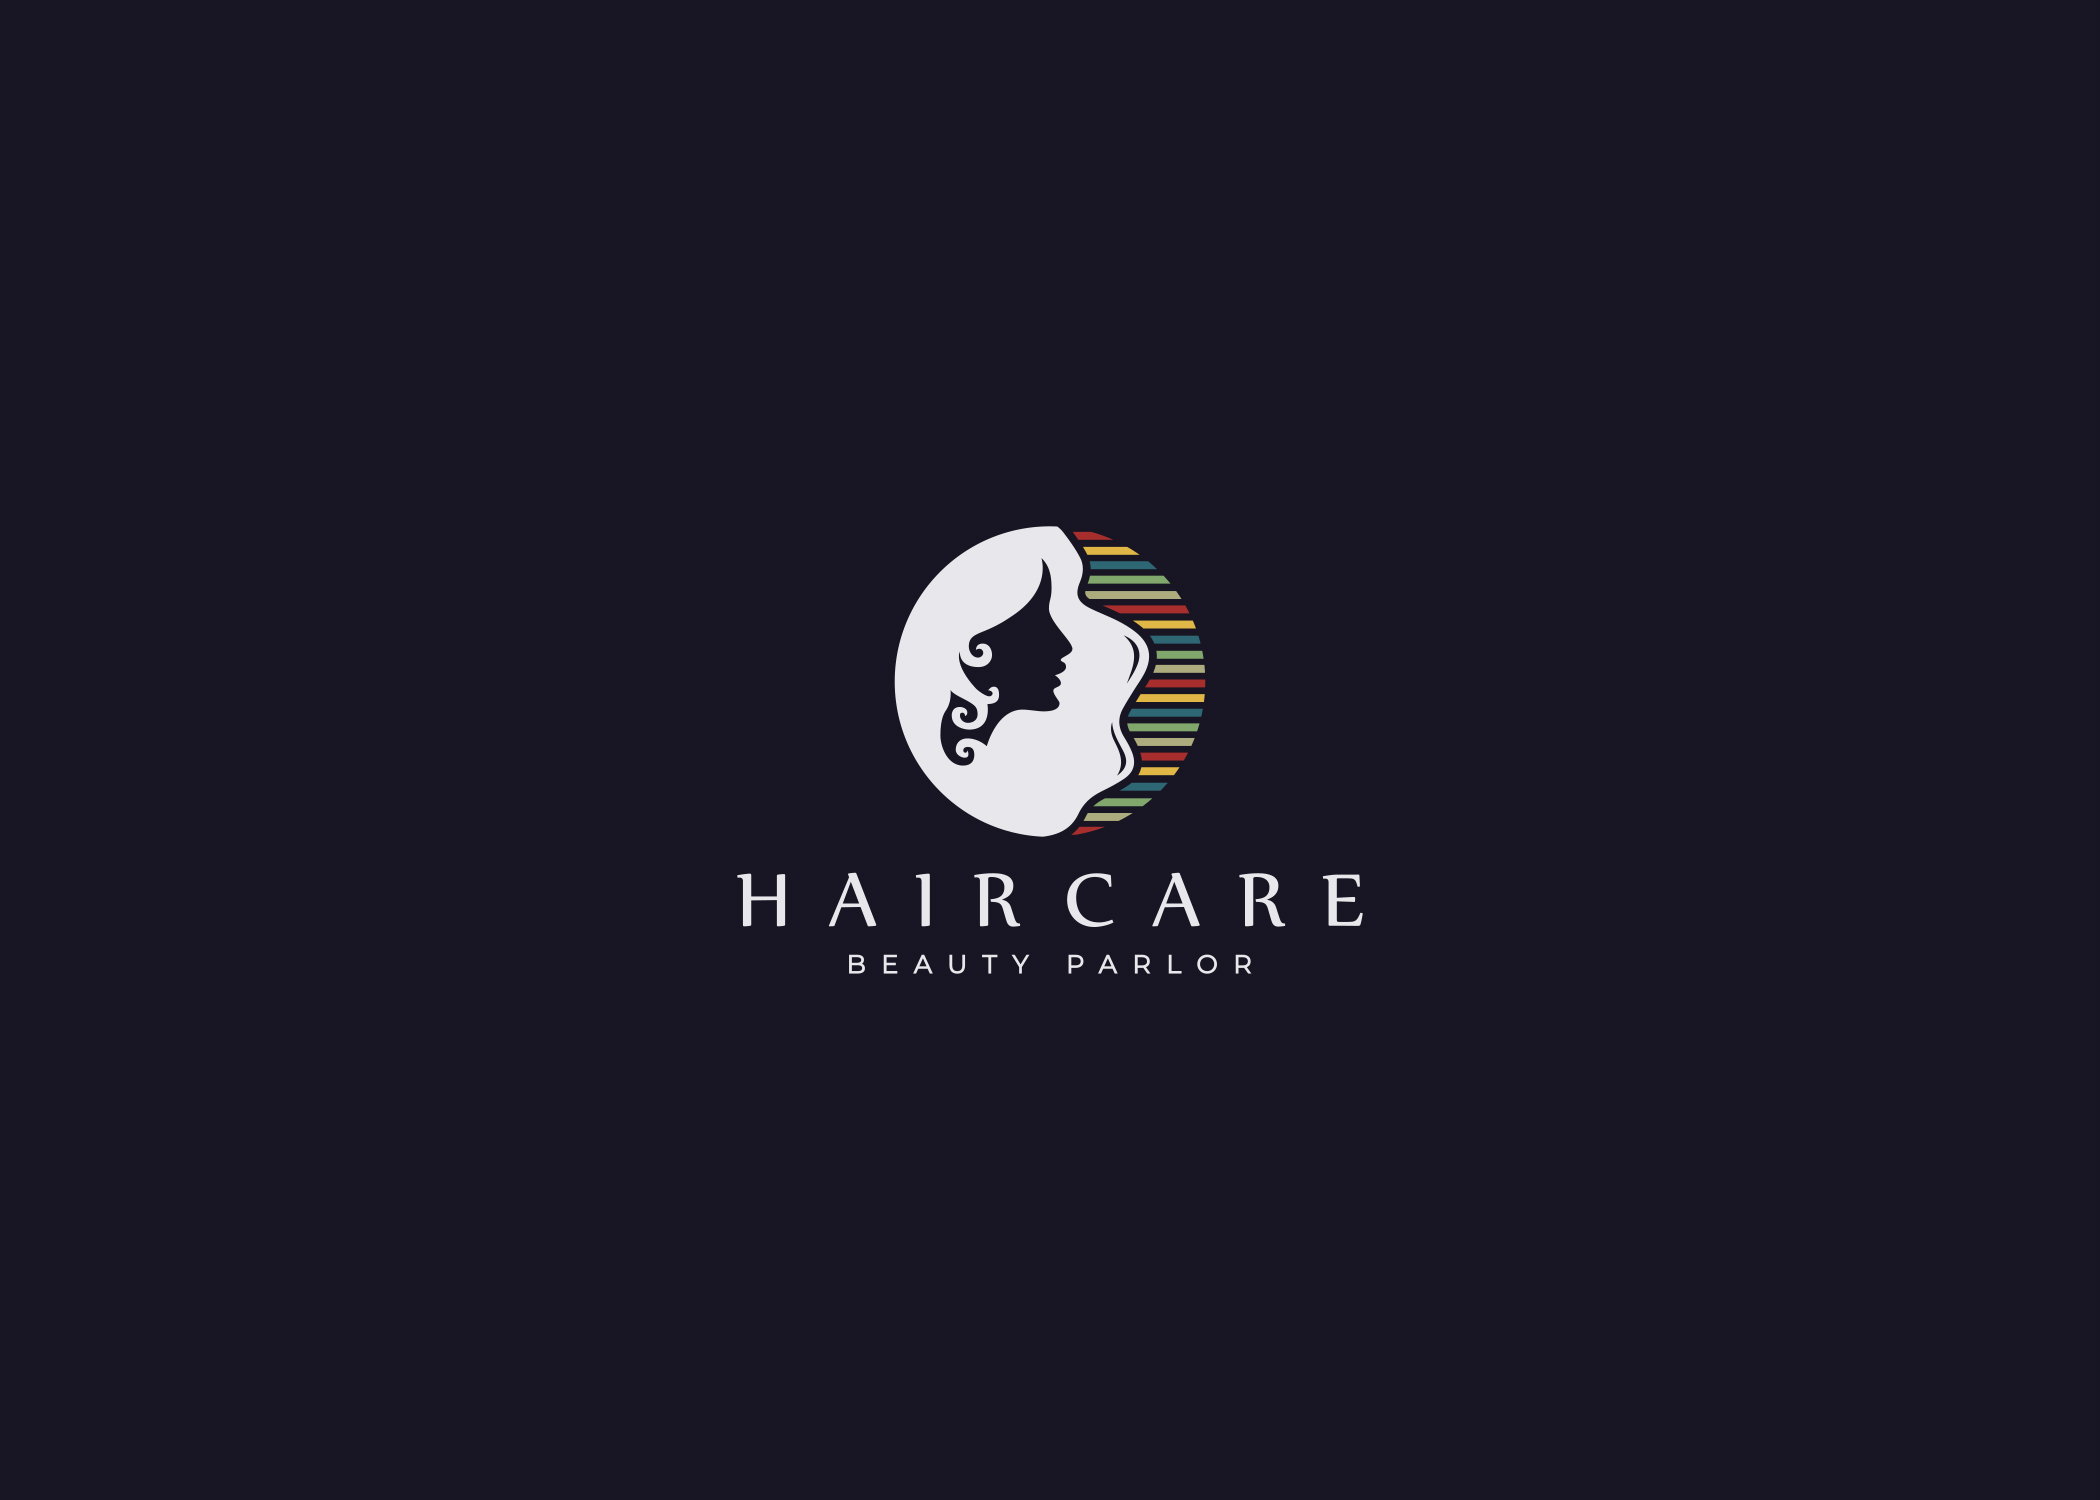 Hair Care | Beauty logo design, Beauty logo, Hair care